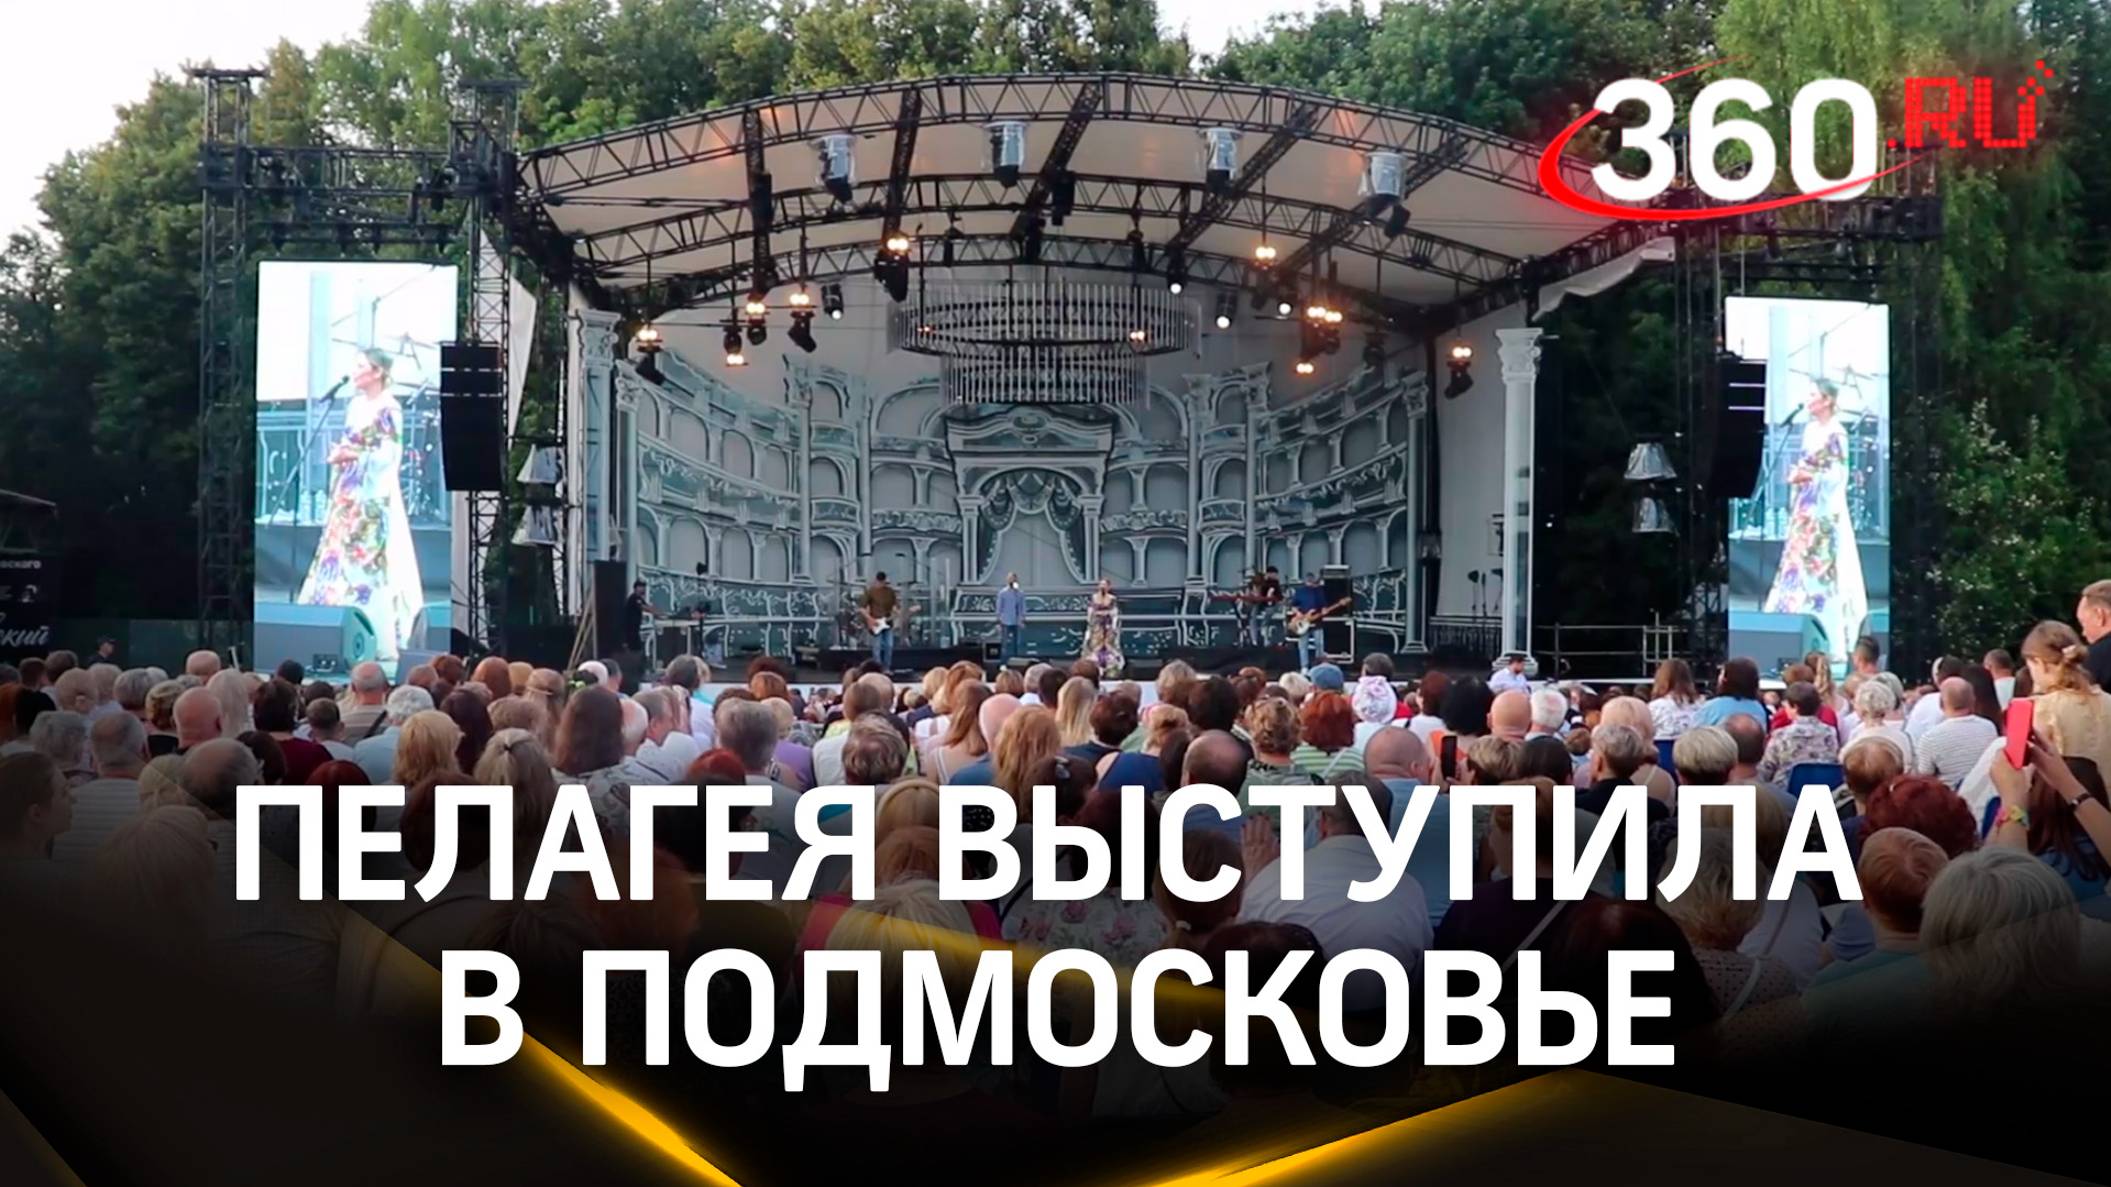 Пелагея выступила в Подмосковье: кульминация музыкального фестиваля в Клину